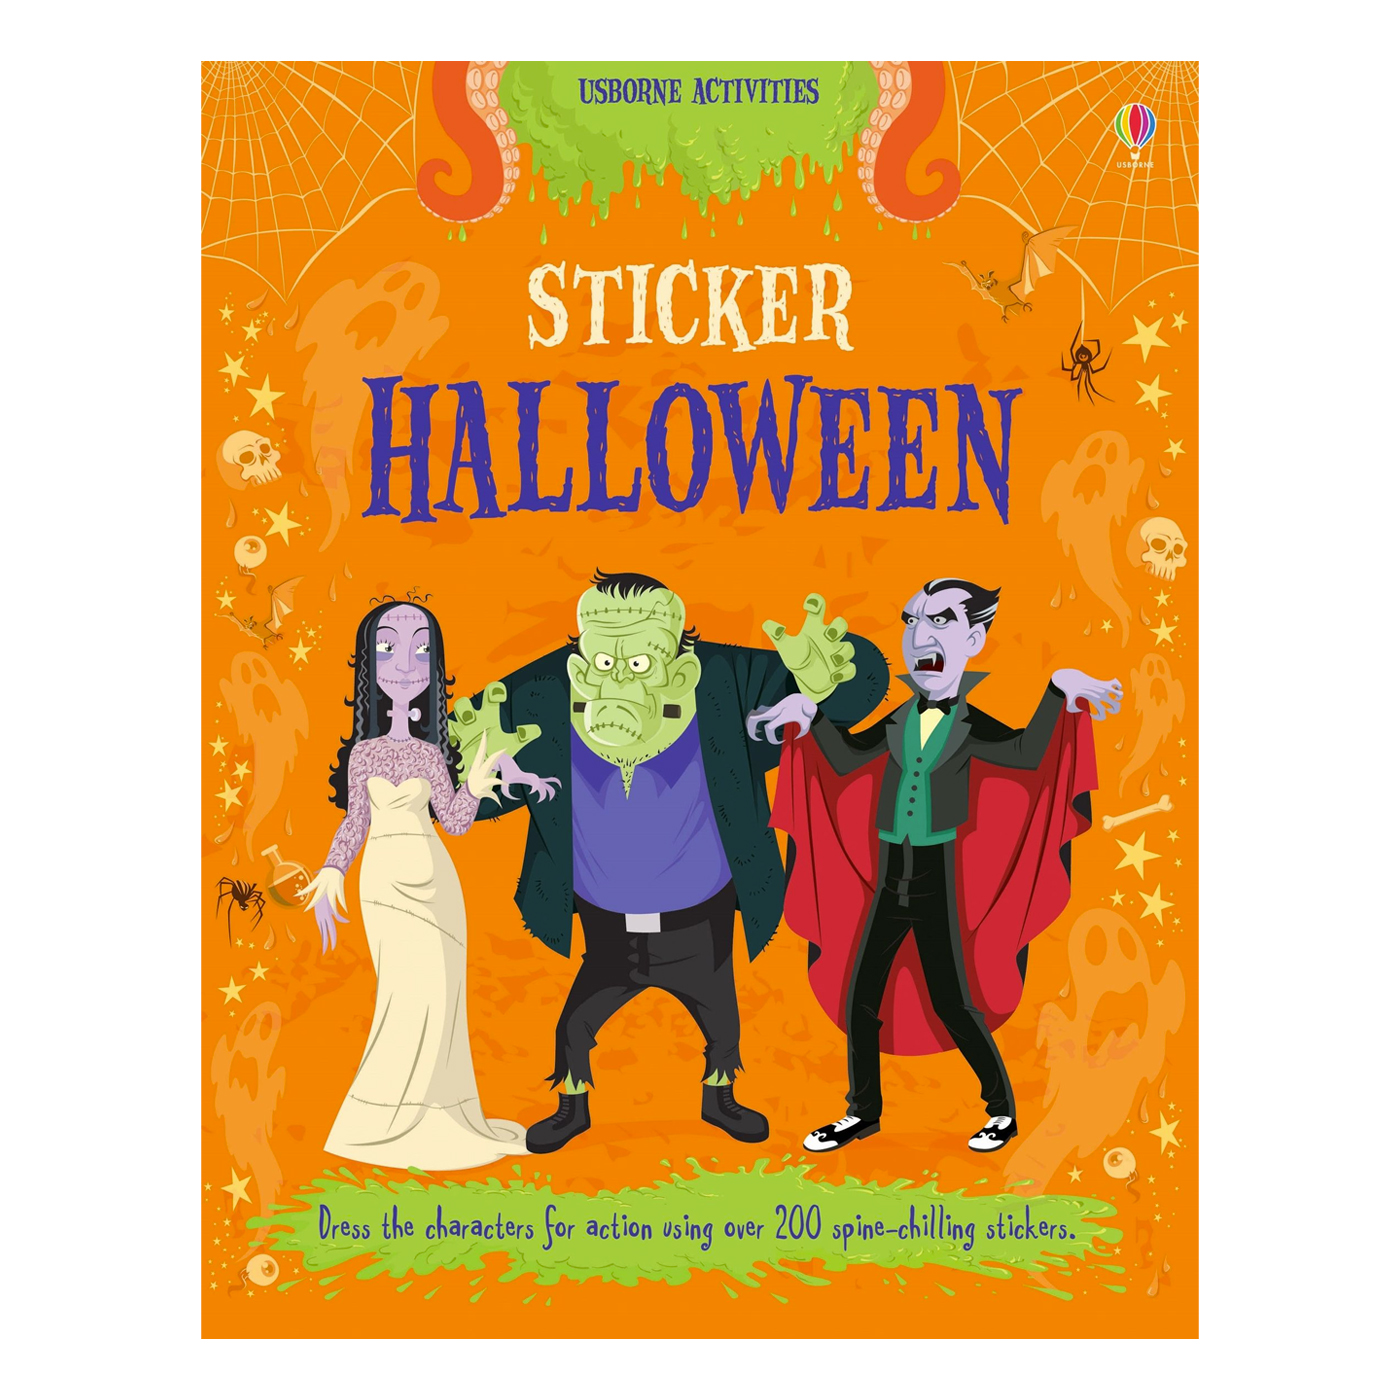  Sticker Halloween